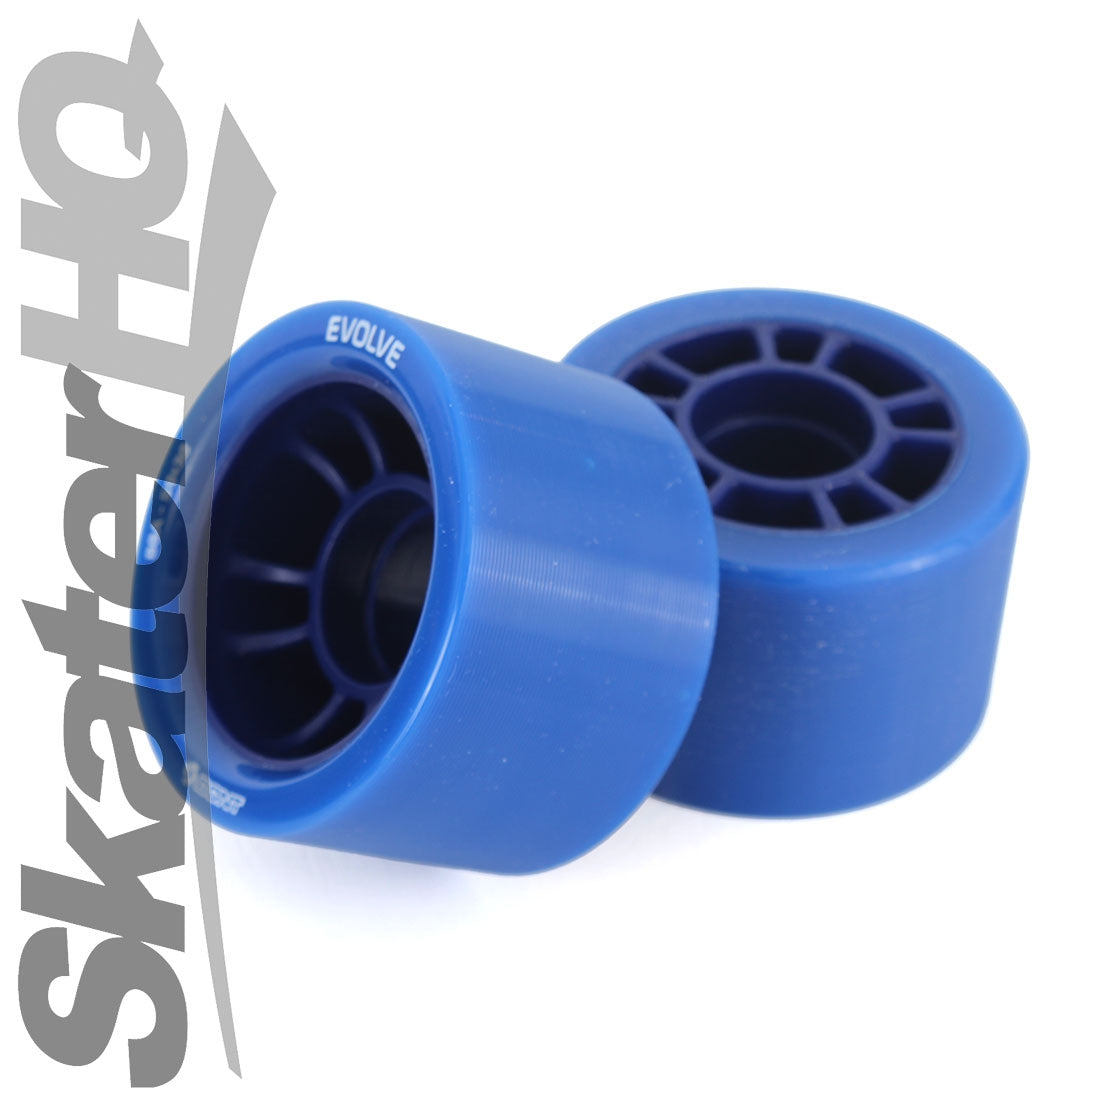 Bont Evolve Derby 59x38mm 88a 4pk - Blue Roller Skate Wheels